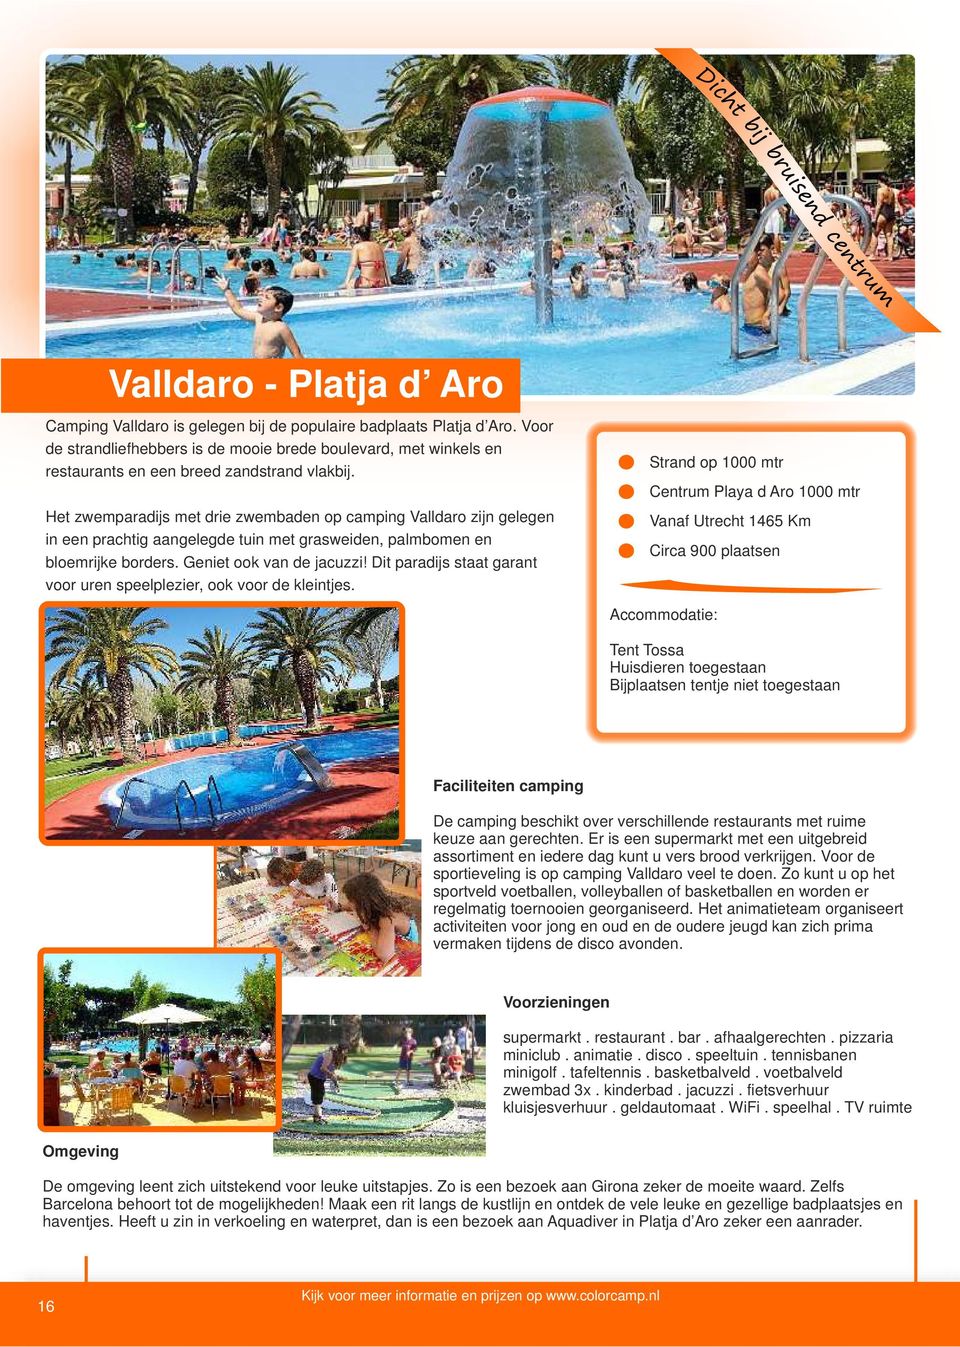 Het zwemparadijs met drie zwembaden op camping Valldaro zijn gelegen in een prachtig aangelegde tuin met grasweiden, palmbomen en bloemrijke borders. Geniet ook van de jacuzzi!